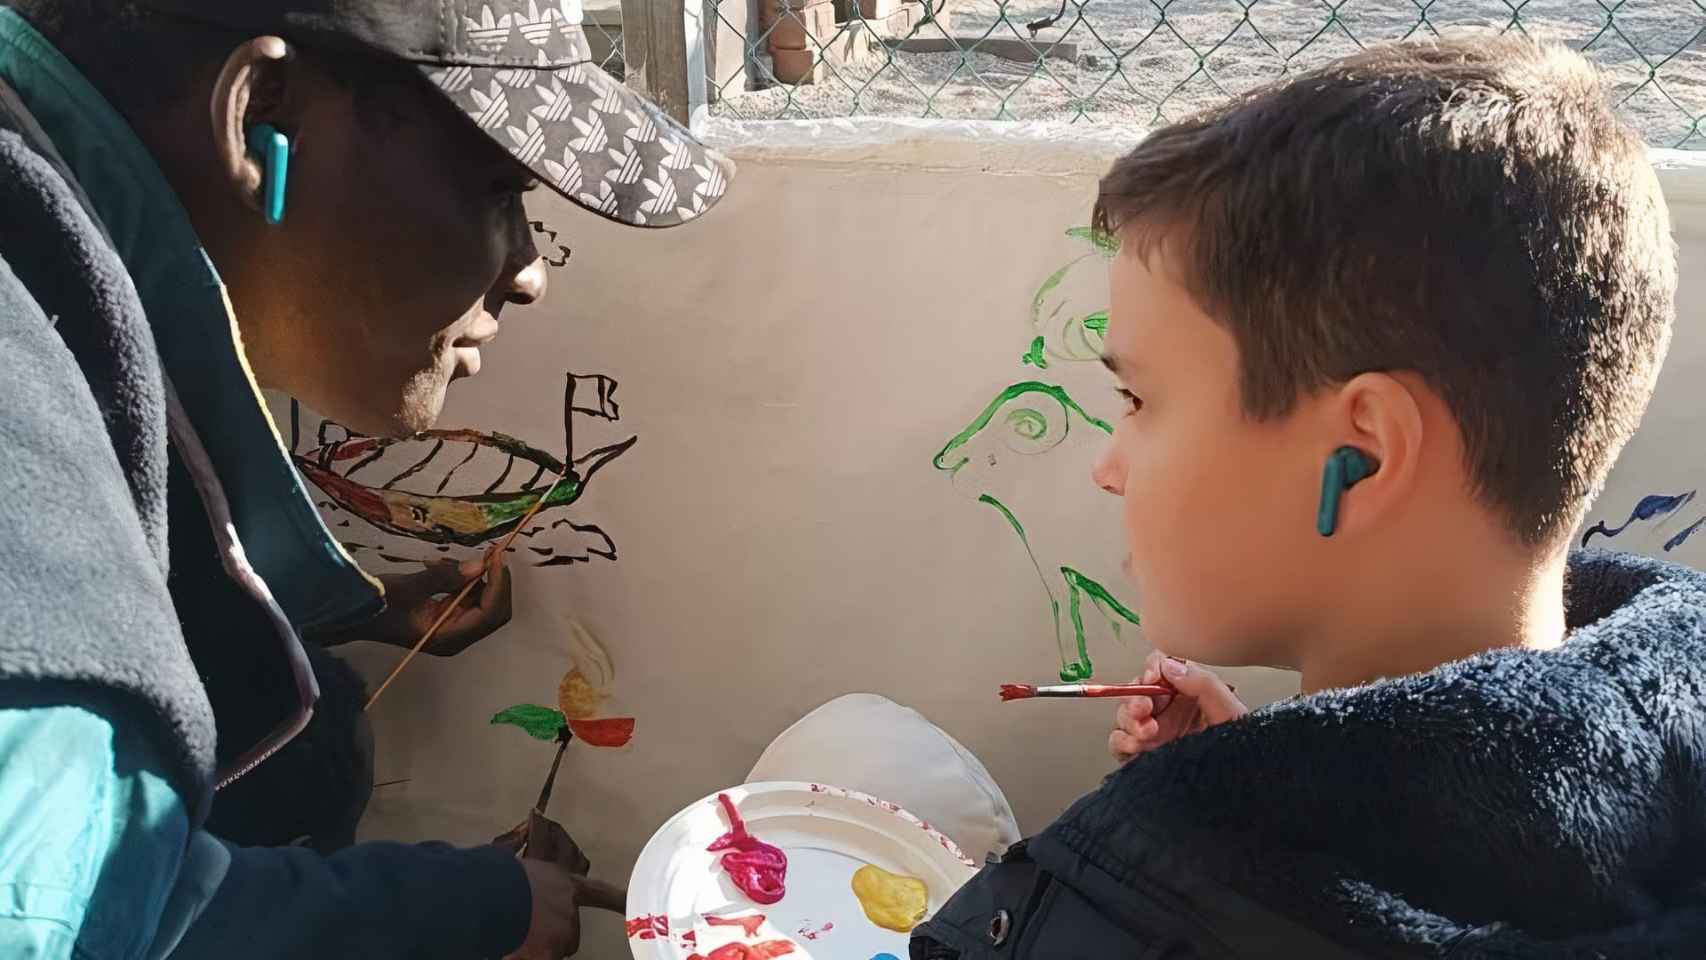 Uno de los migrantes realiza un mural junto a un estudiante del centro.